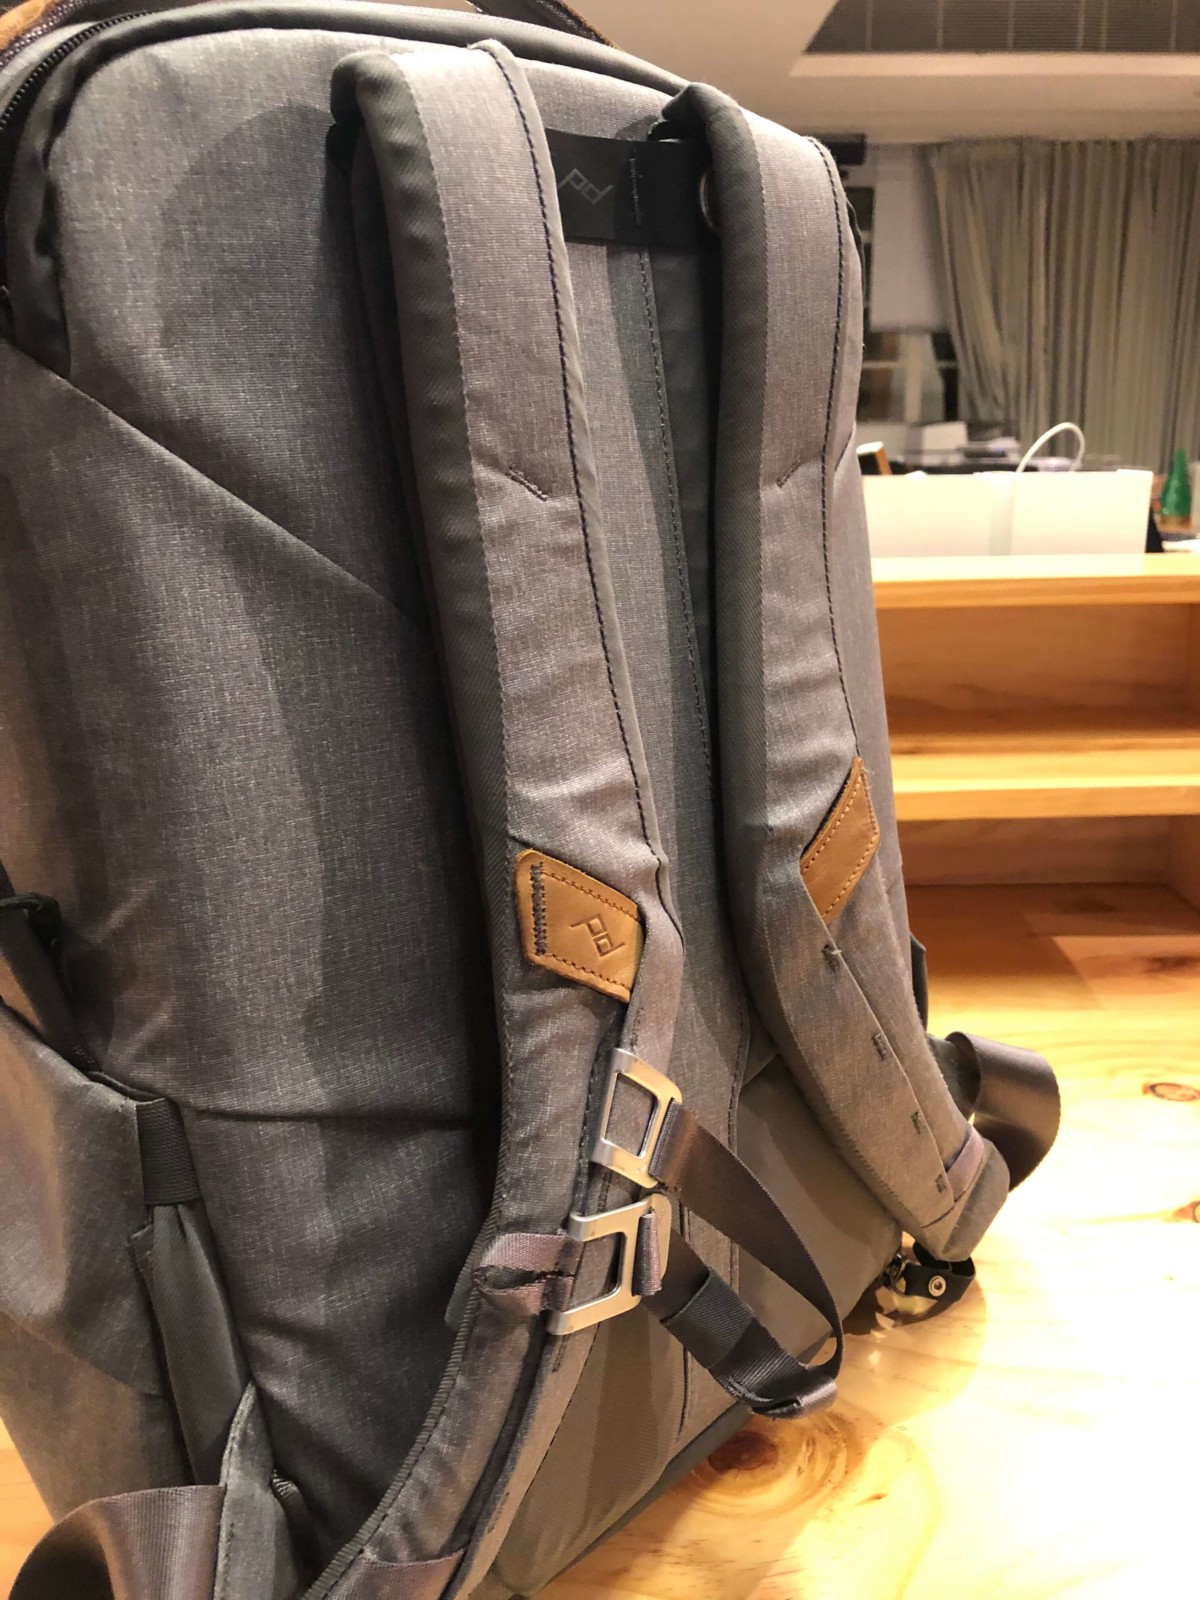 Shoulder straps of the Peak Design Everyday Backpack